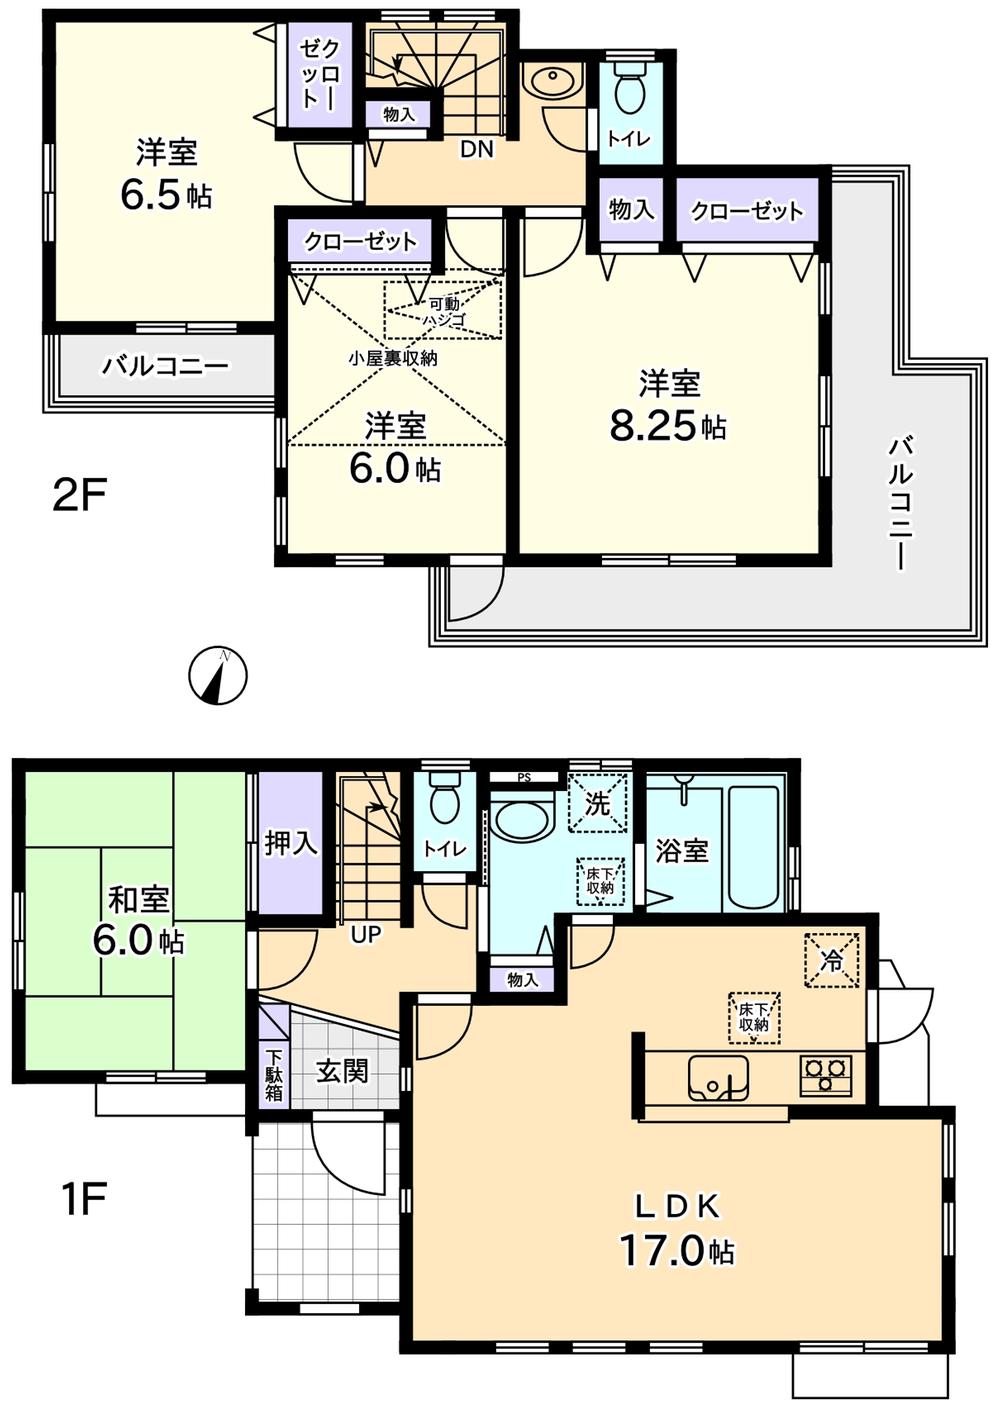 Floor plan. 40,800,000 yen, 4LDK, Land area 133.59 sq m , Building area 103.68 sq m 1 Building 4LDK Wide balcony